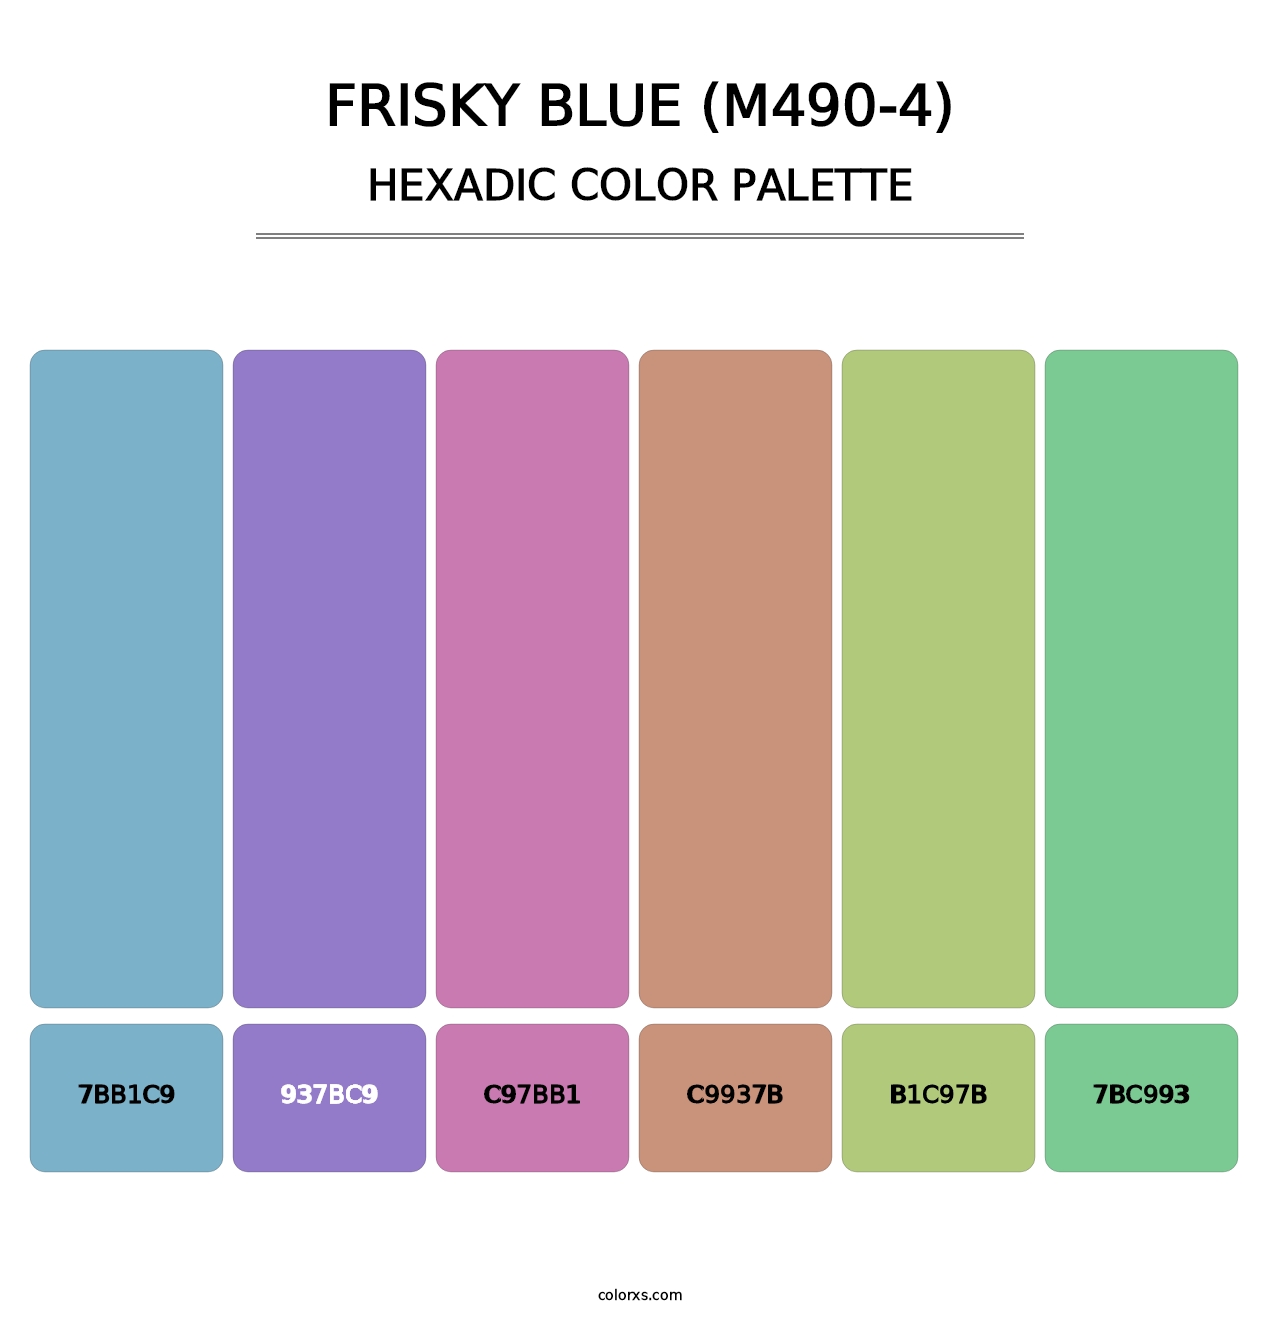 Frisky Blue (M490-4) - Hexadic Color Palette